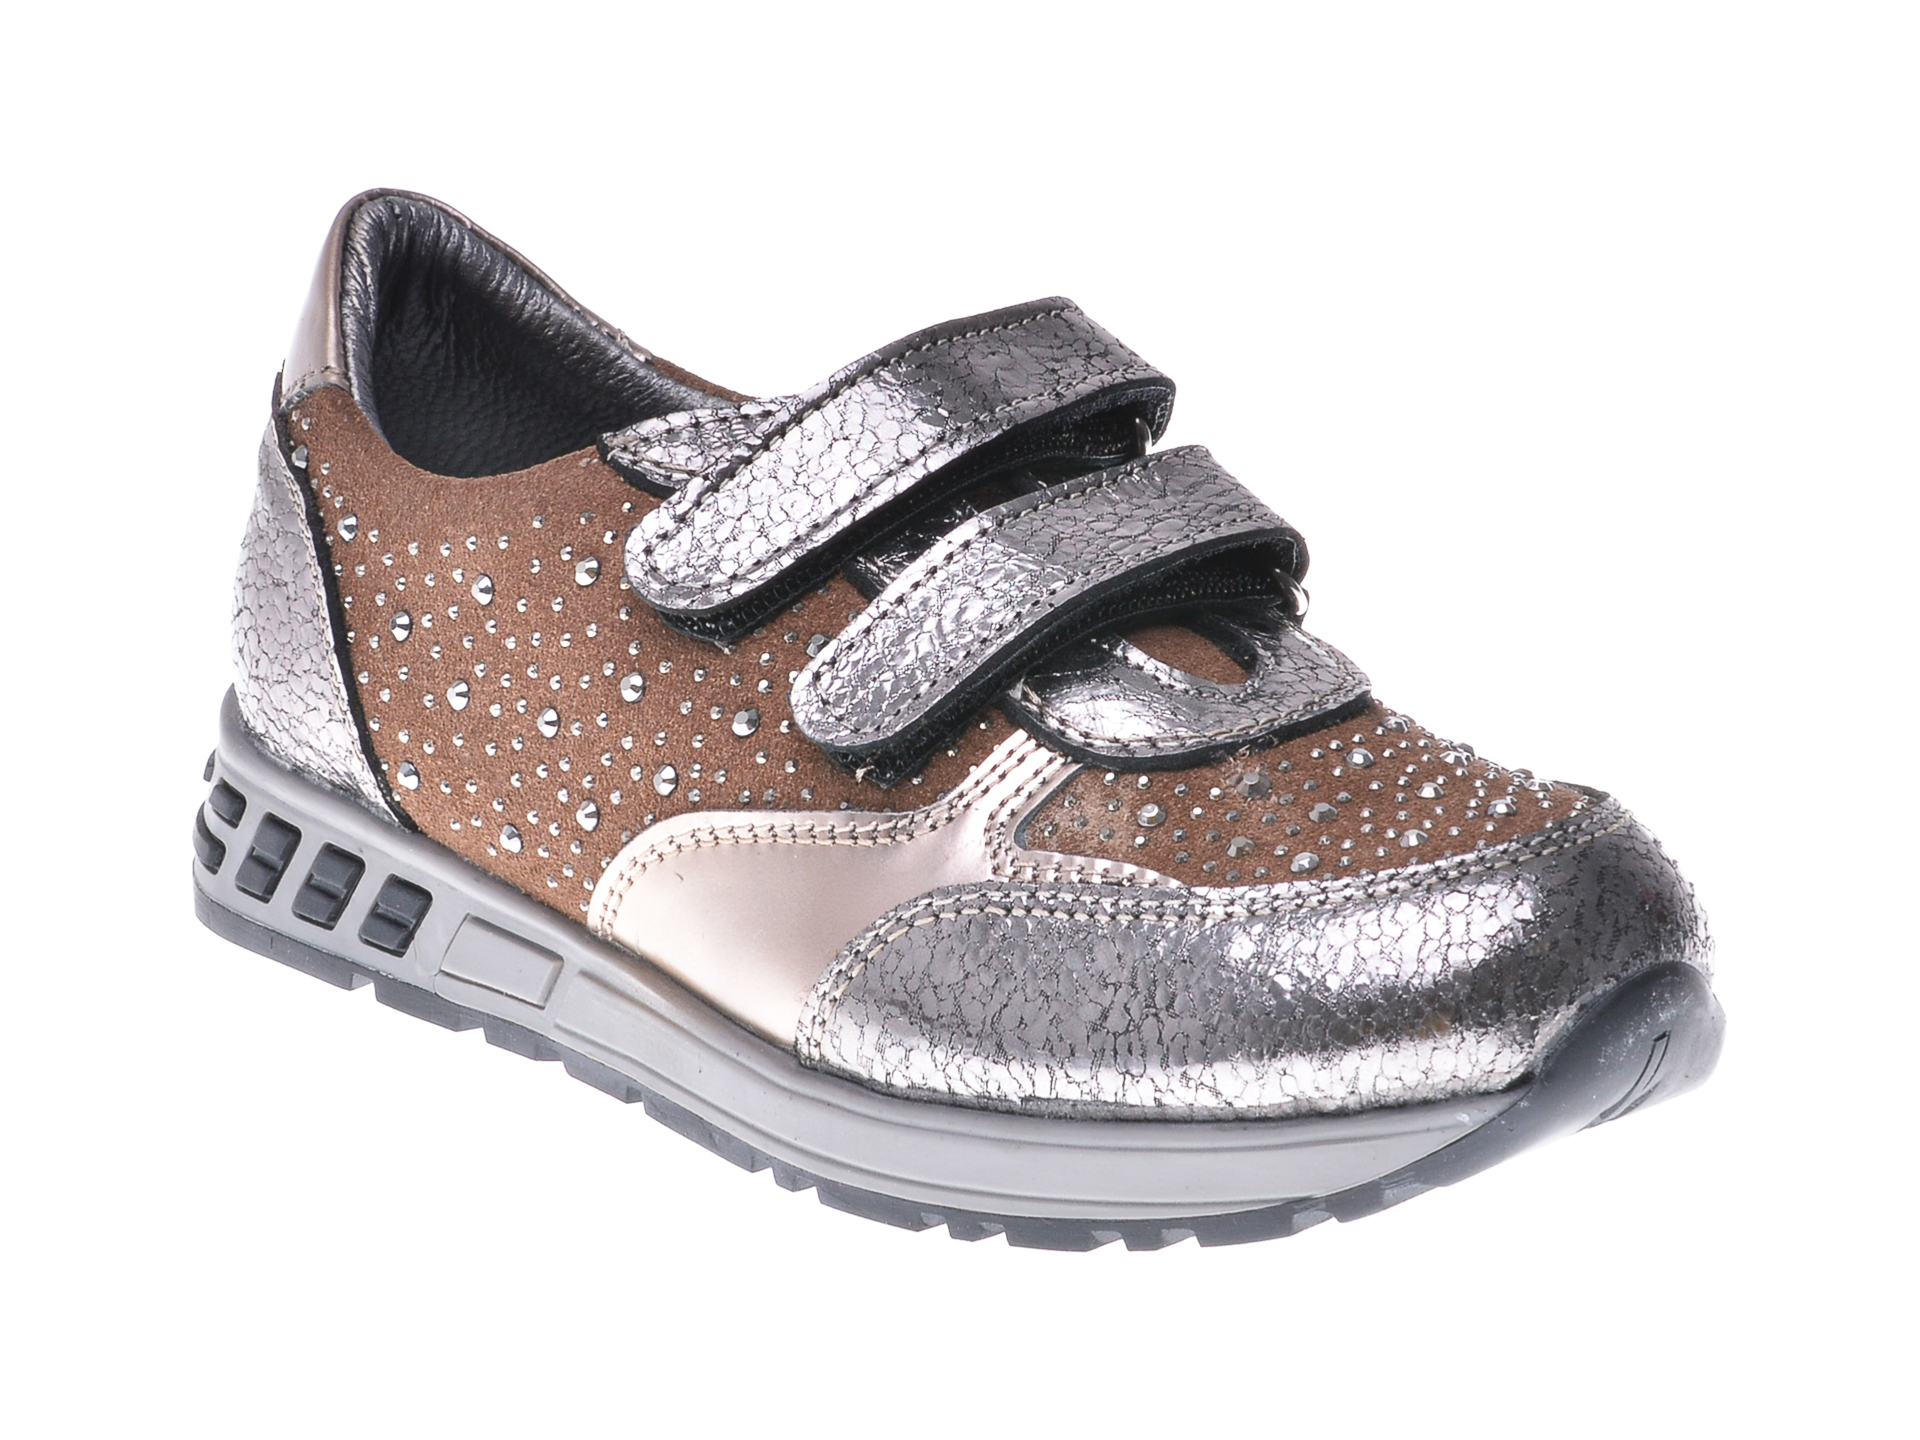 Pantofi pentru copii SELECTIONS KIDS argintii, P2861, din piele naturala